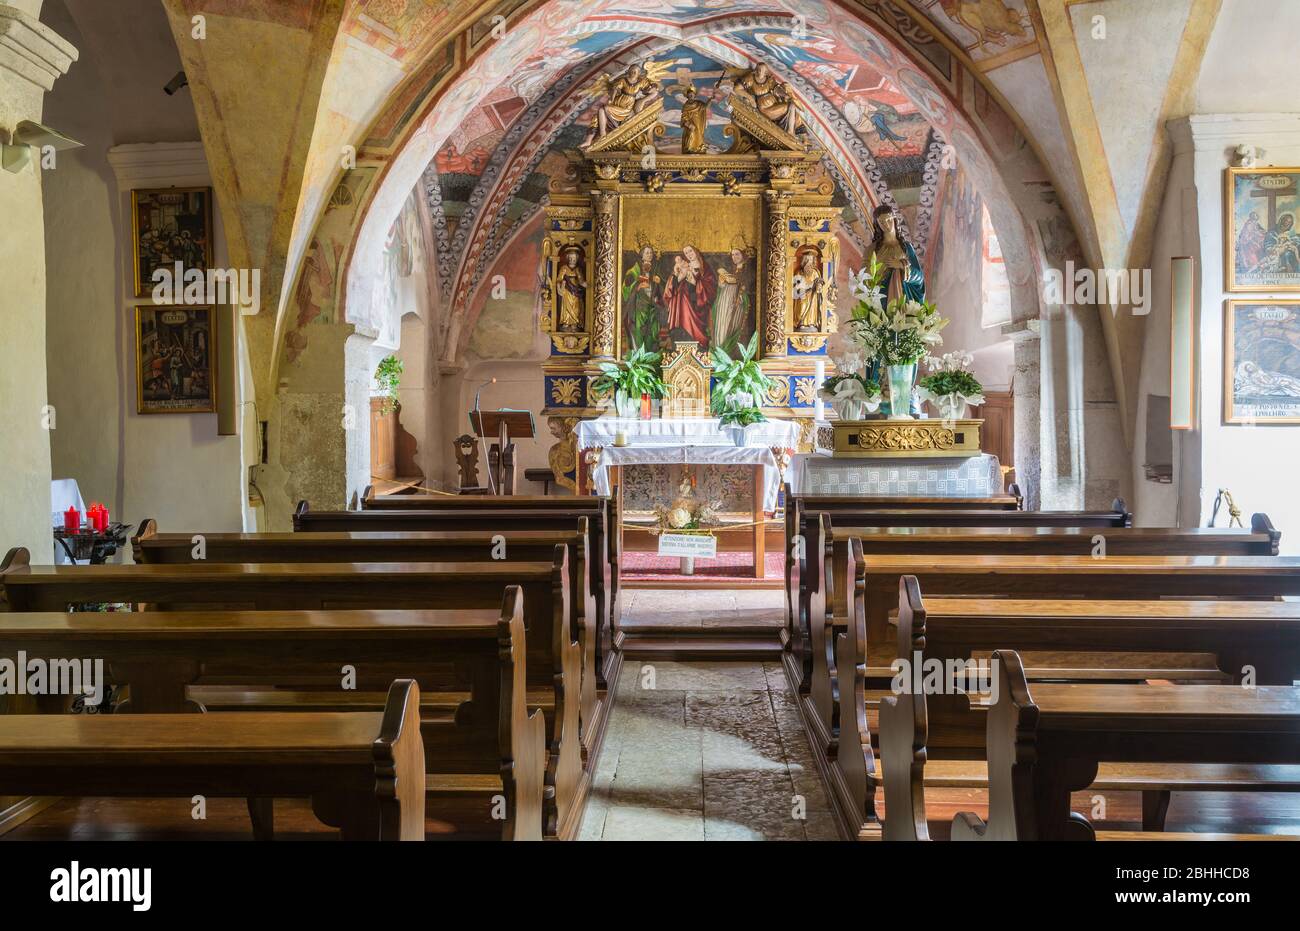 Église de S. Marcello à Dardine, trente, Italie - 29 janvier 2019. L'église conserve les fresques médiévales de valatabel. Intérieur de l'église Banque D'Images